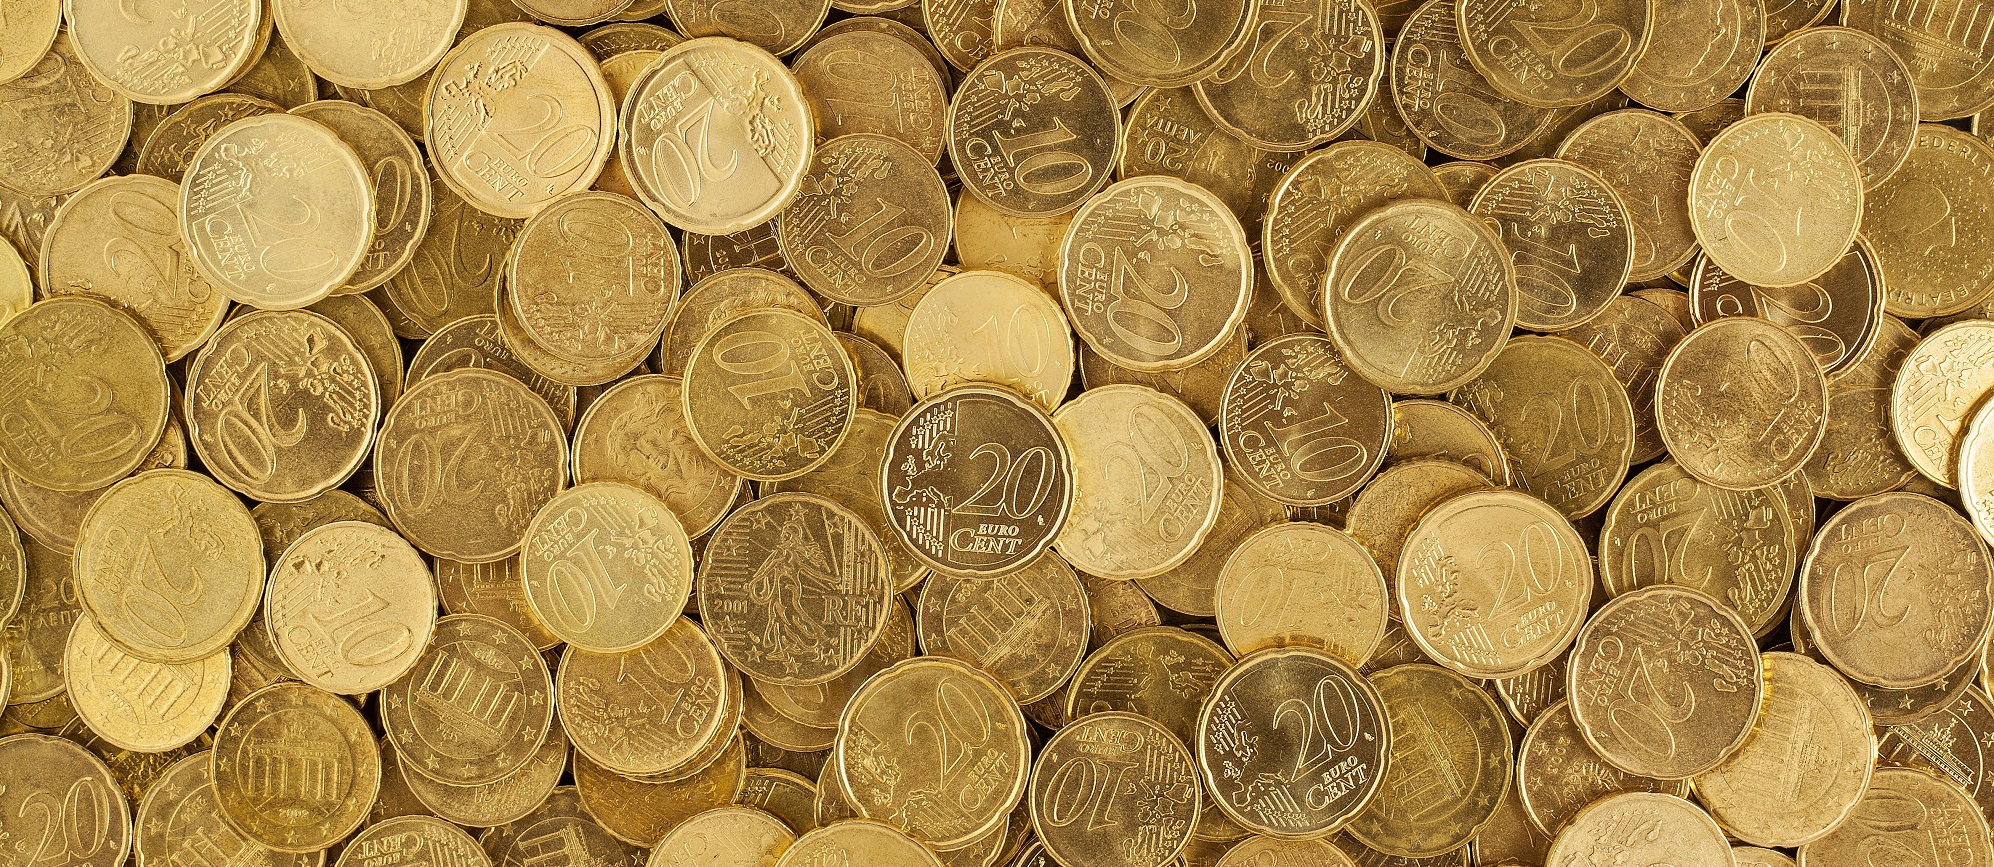 Zu sehen sind viele goldene Münzen.